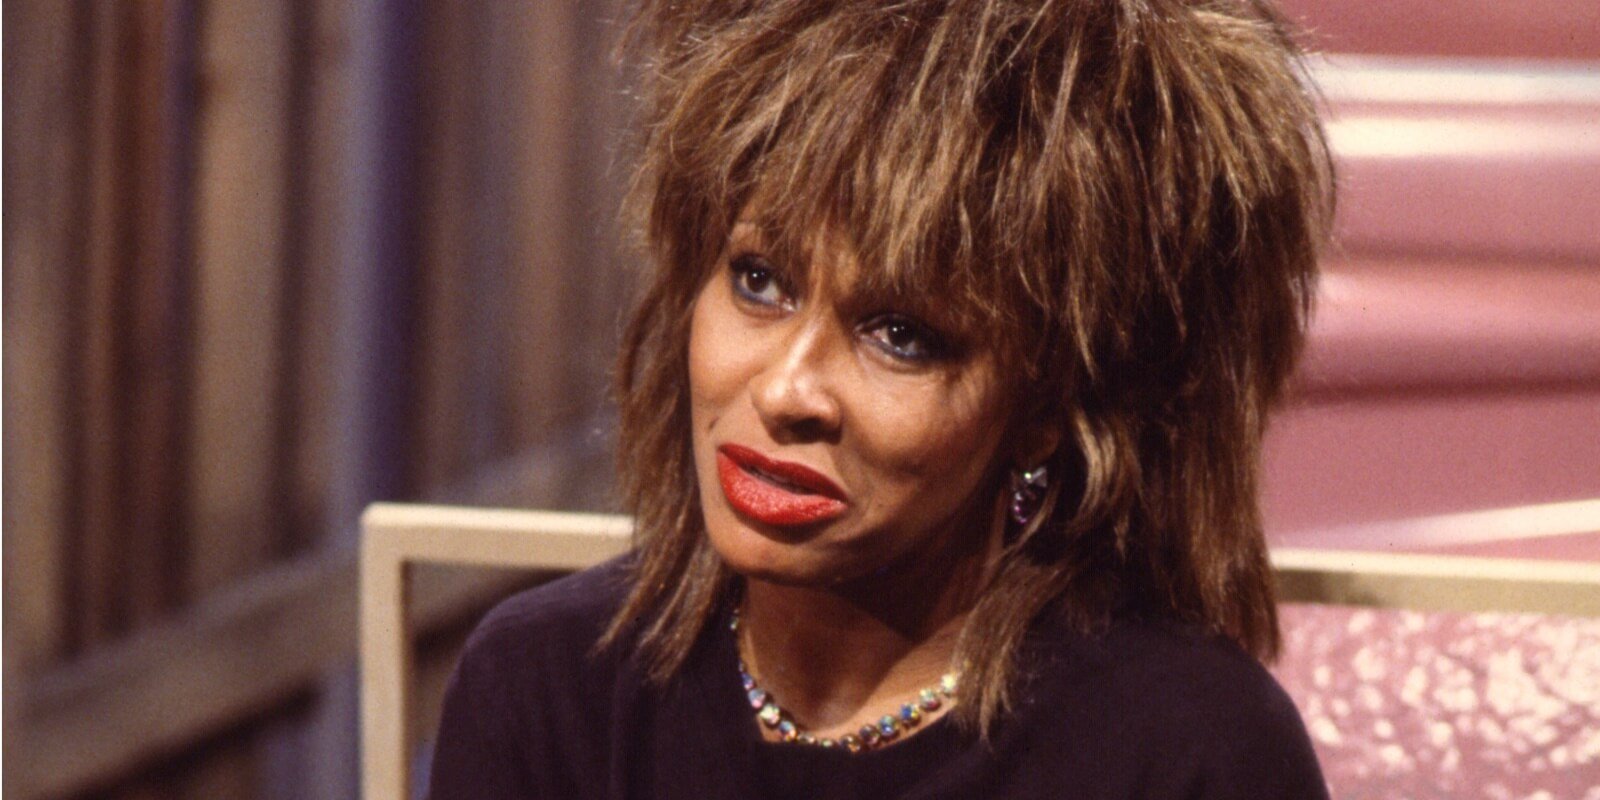 Tina Turner เขียนว่า 'ฉันทำให้ตัวเองตกอยู่ในอันตรายร้ายแรง' ในโพสต์โซเชียลมีเดียเมื่อสองเดือนก่อนที่เธอจะเสียชีวิต